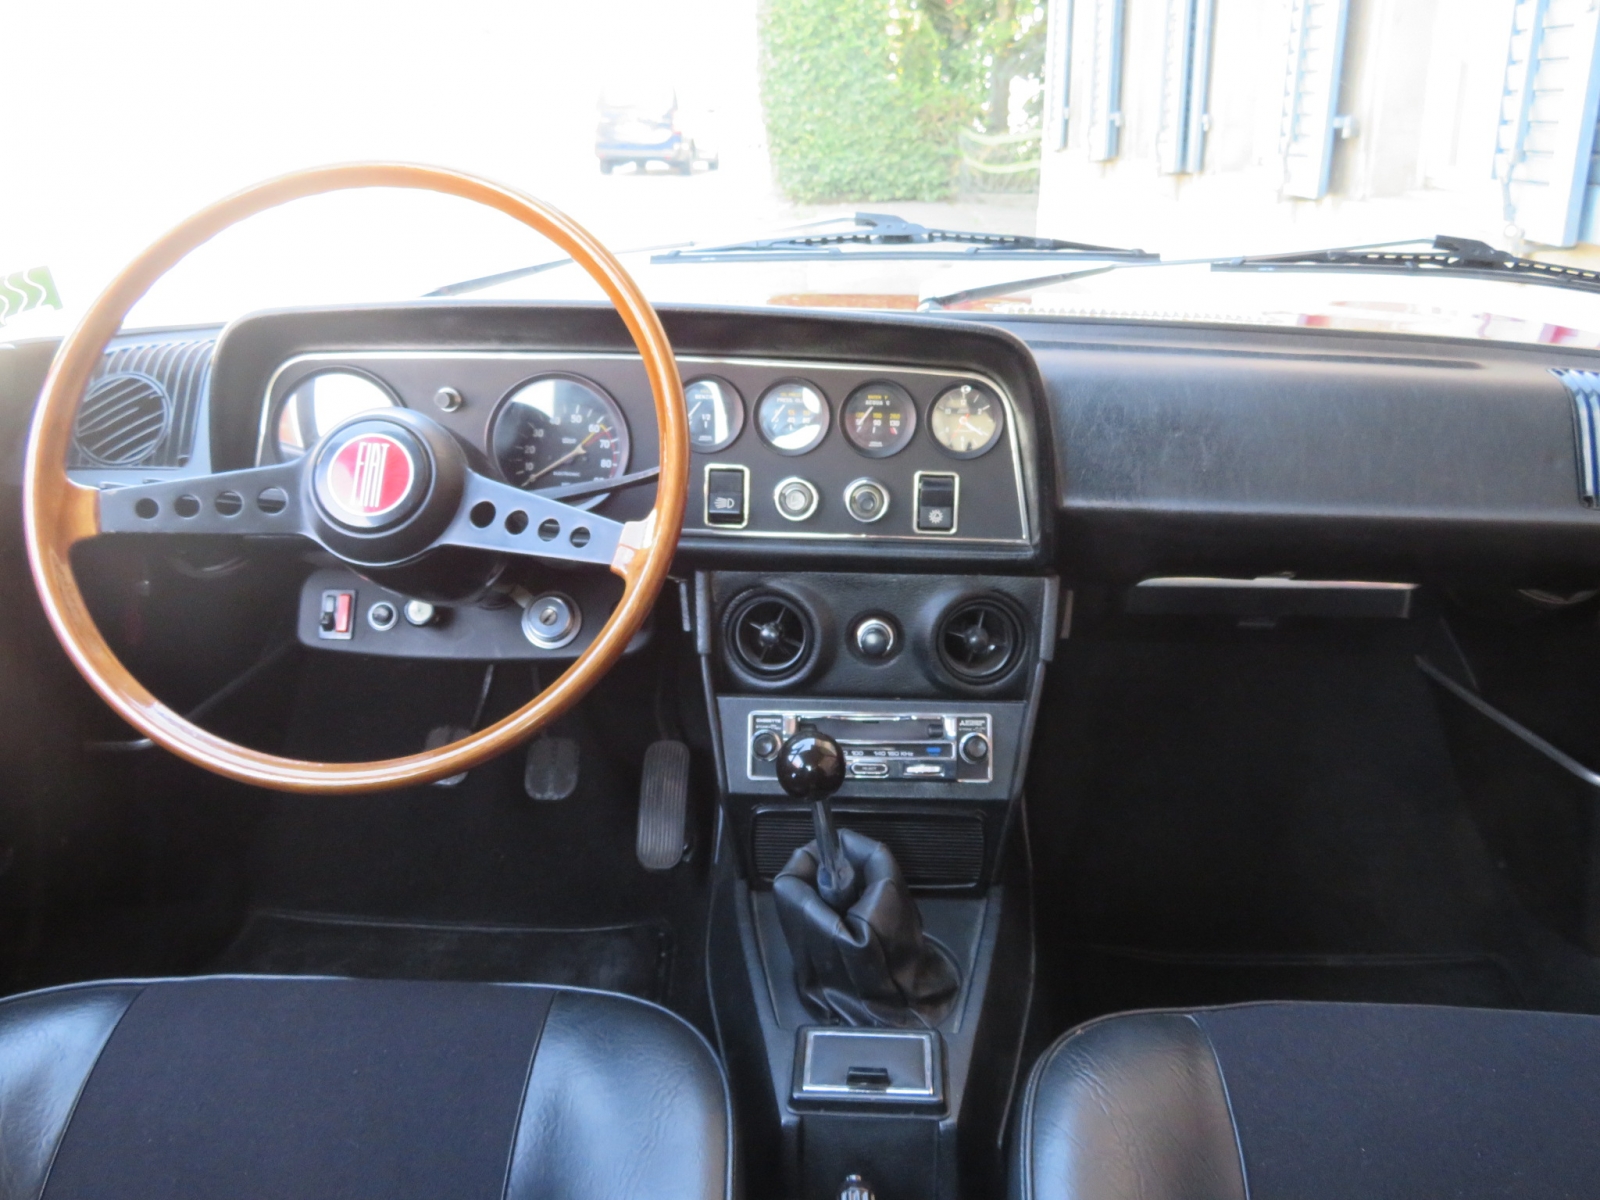 Fiat 124 1600 Sport Coupé